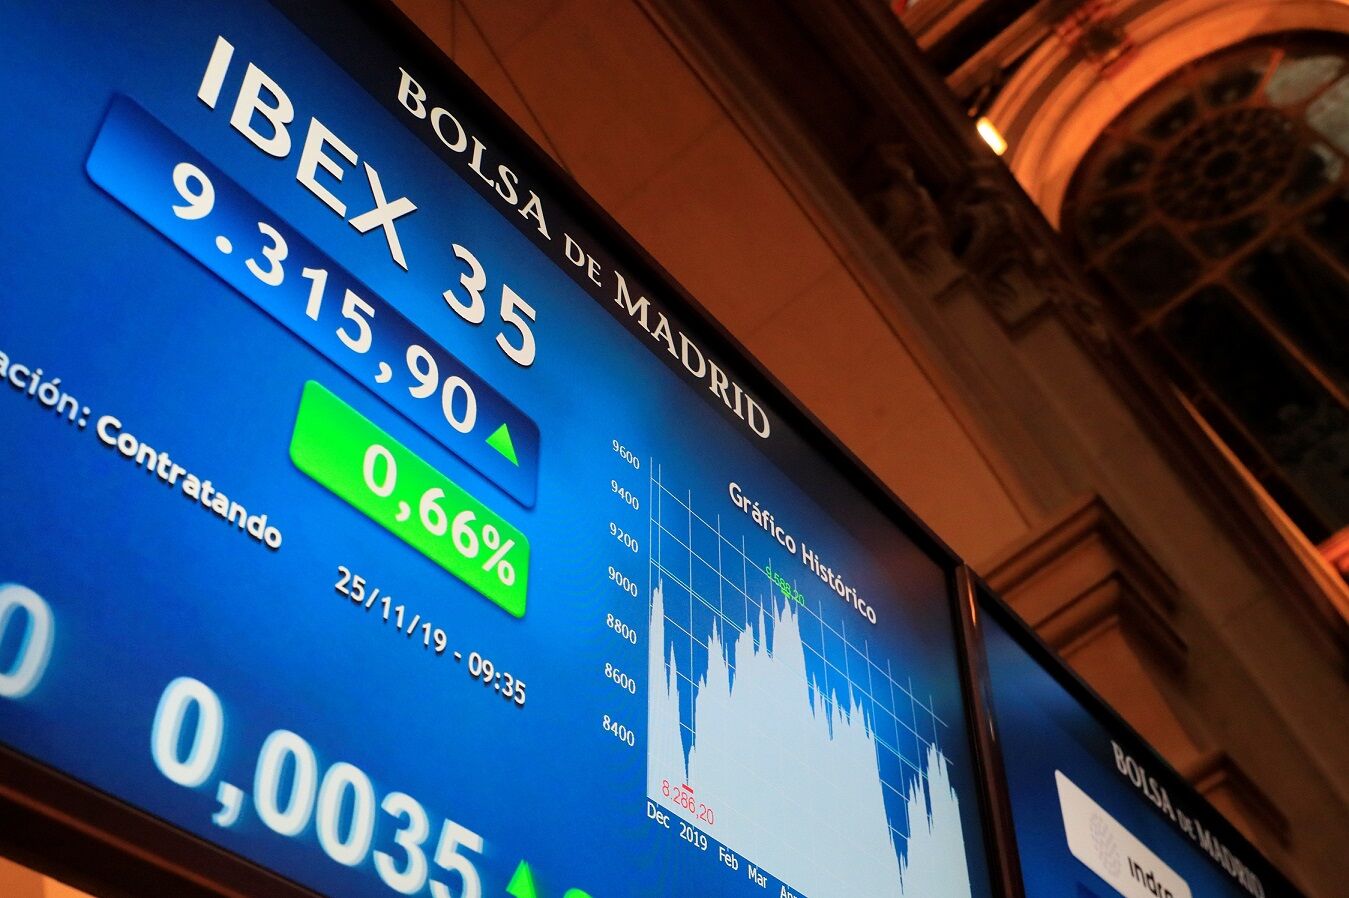 Seis valores del Ibex 35 arrancan el último trimestre con potenciales de más del 40%